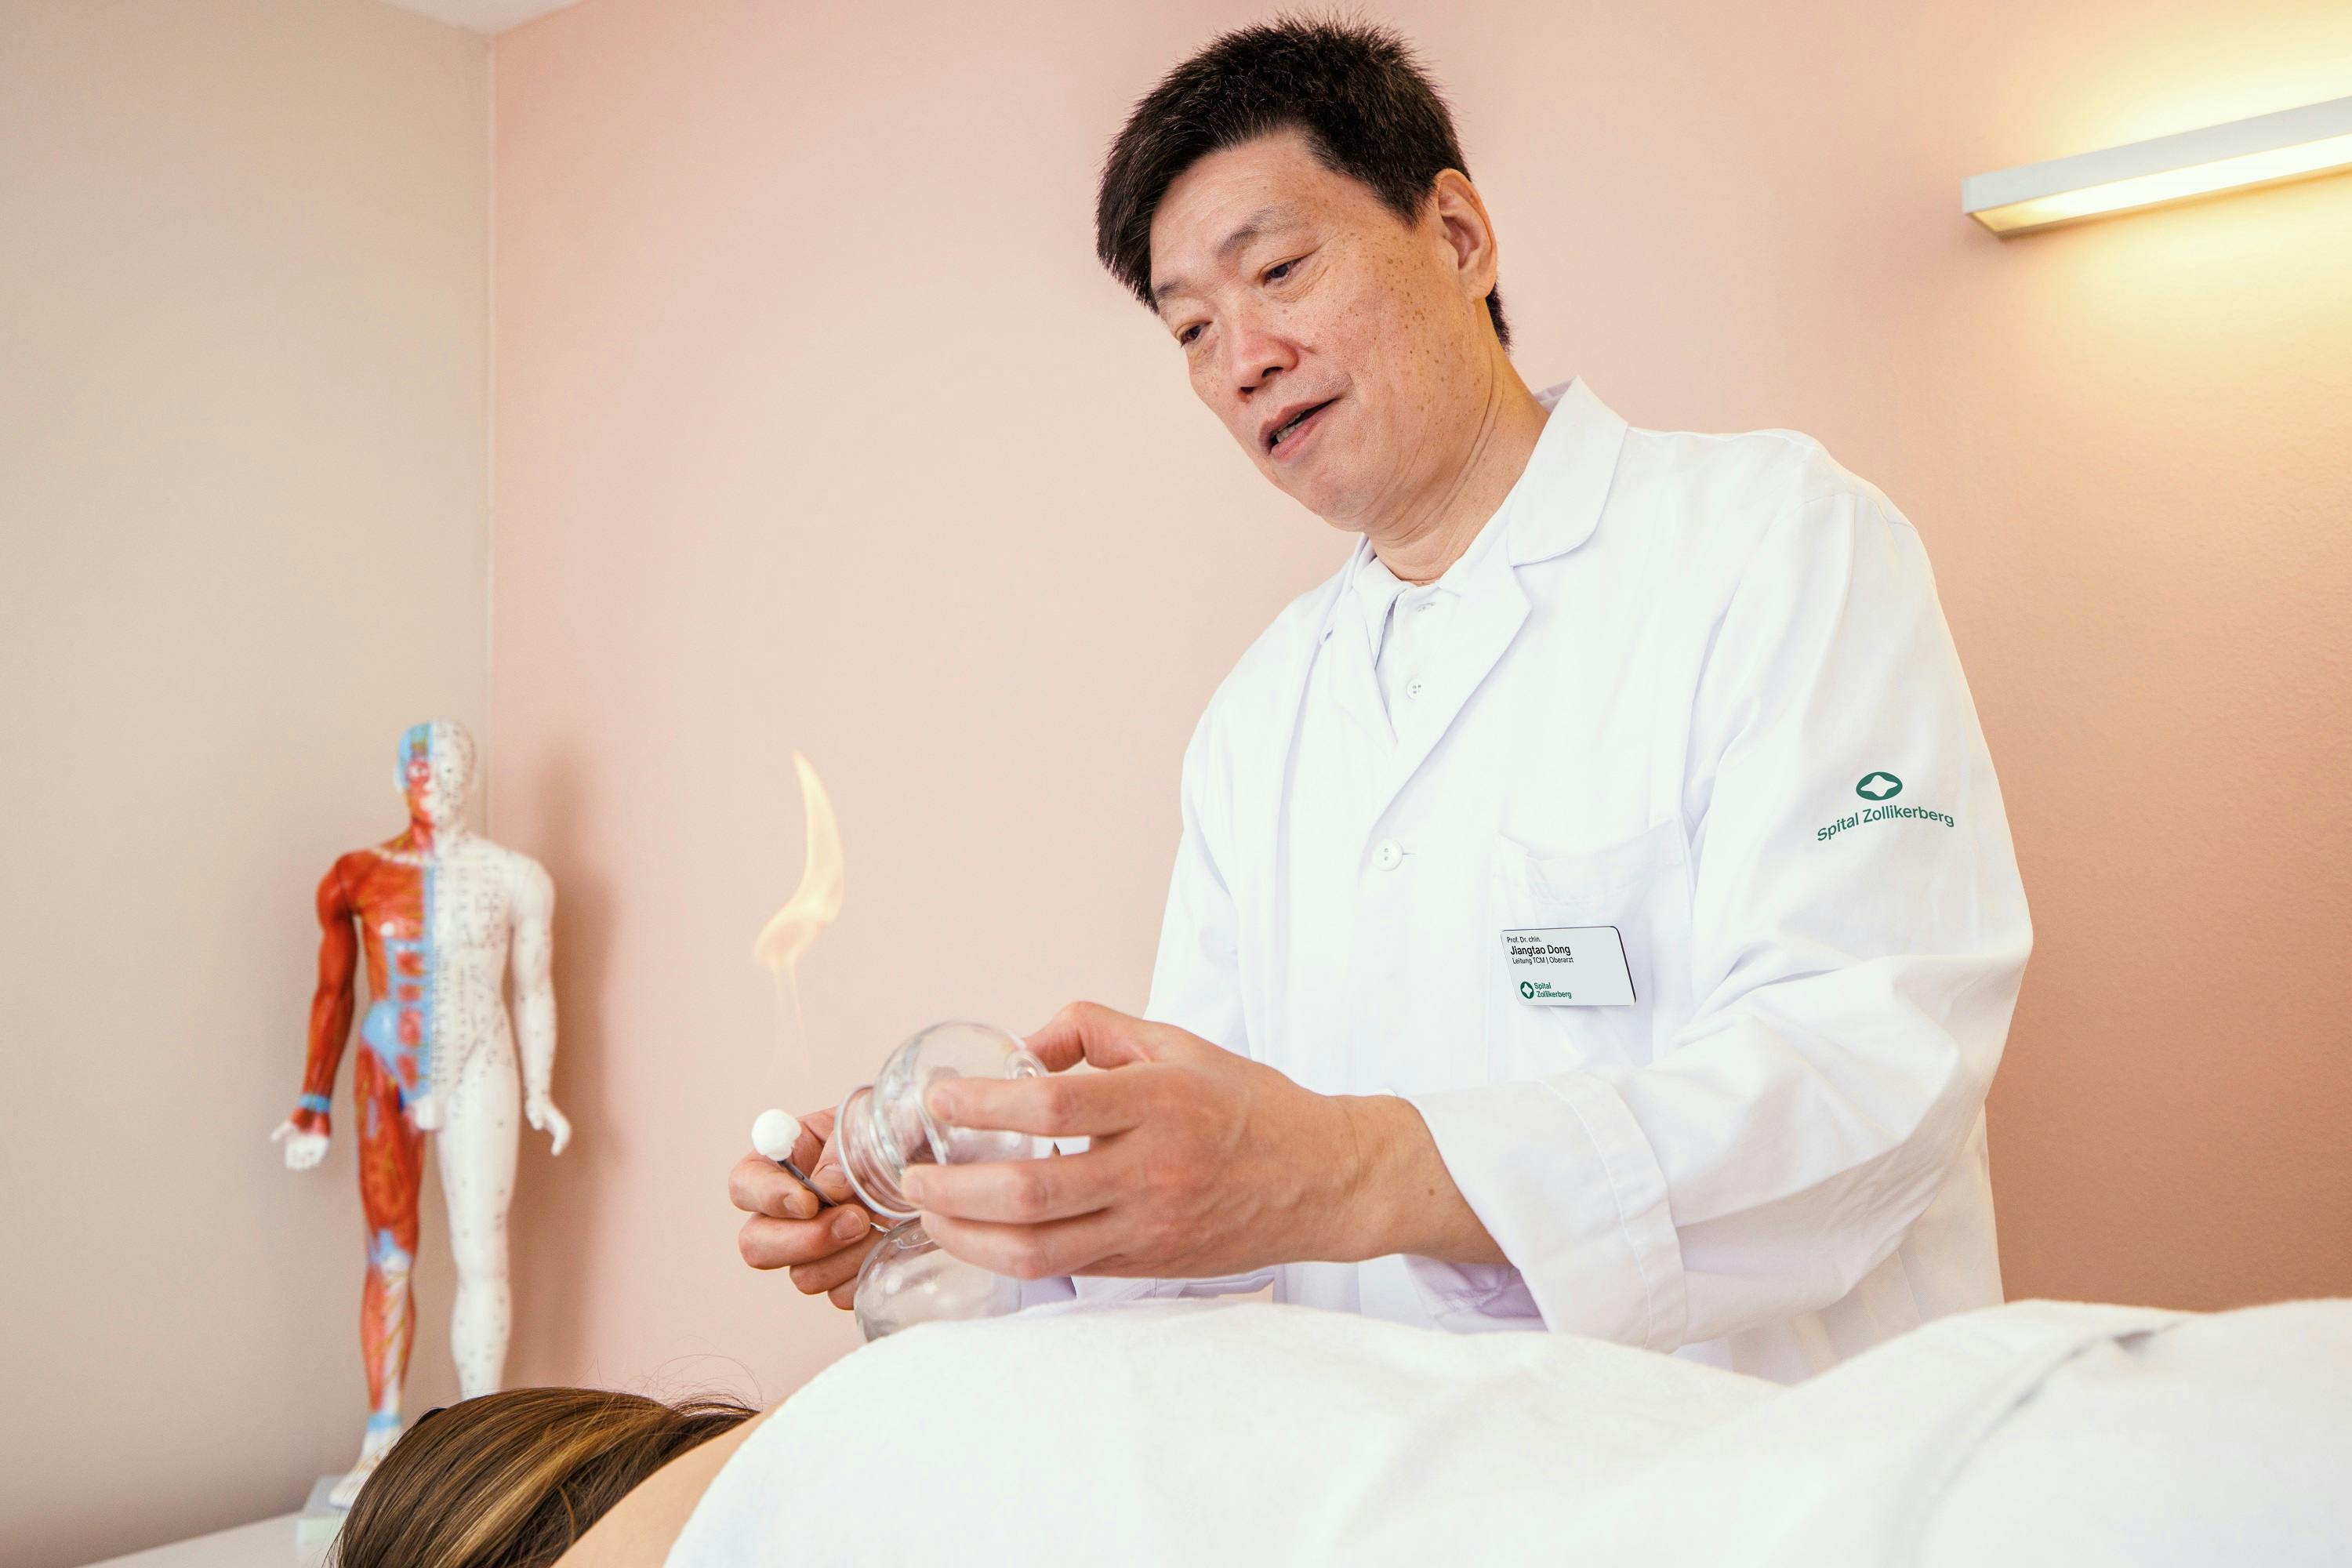 Alternativbeschreibung: Asiatischer Arzt führt Schröpftherapie bei einem Patienten durch.